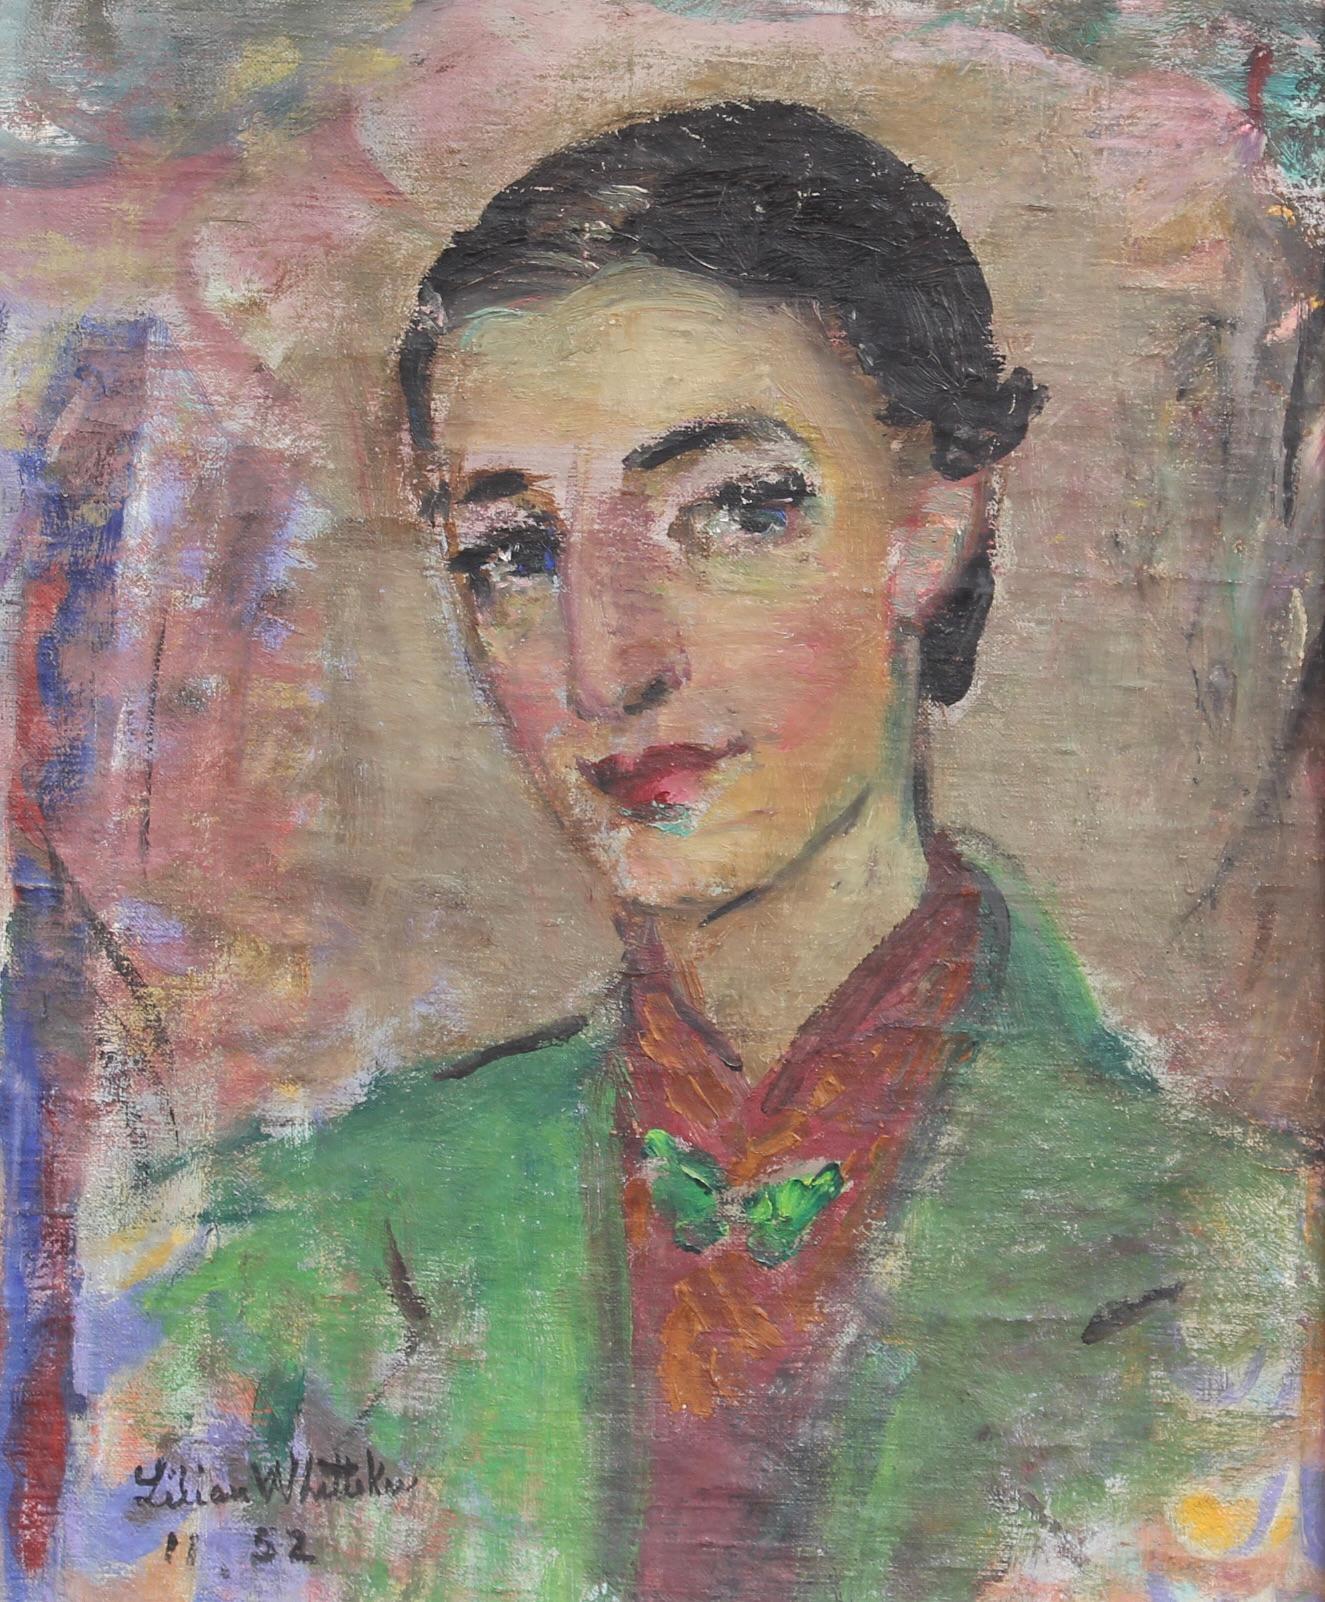 Self-Portrait des Künstlers – Painting von Lilian E. Whitteker